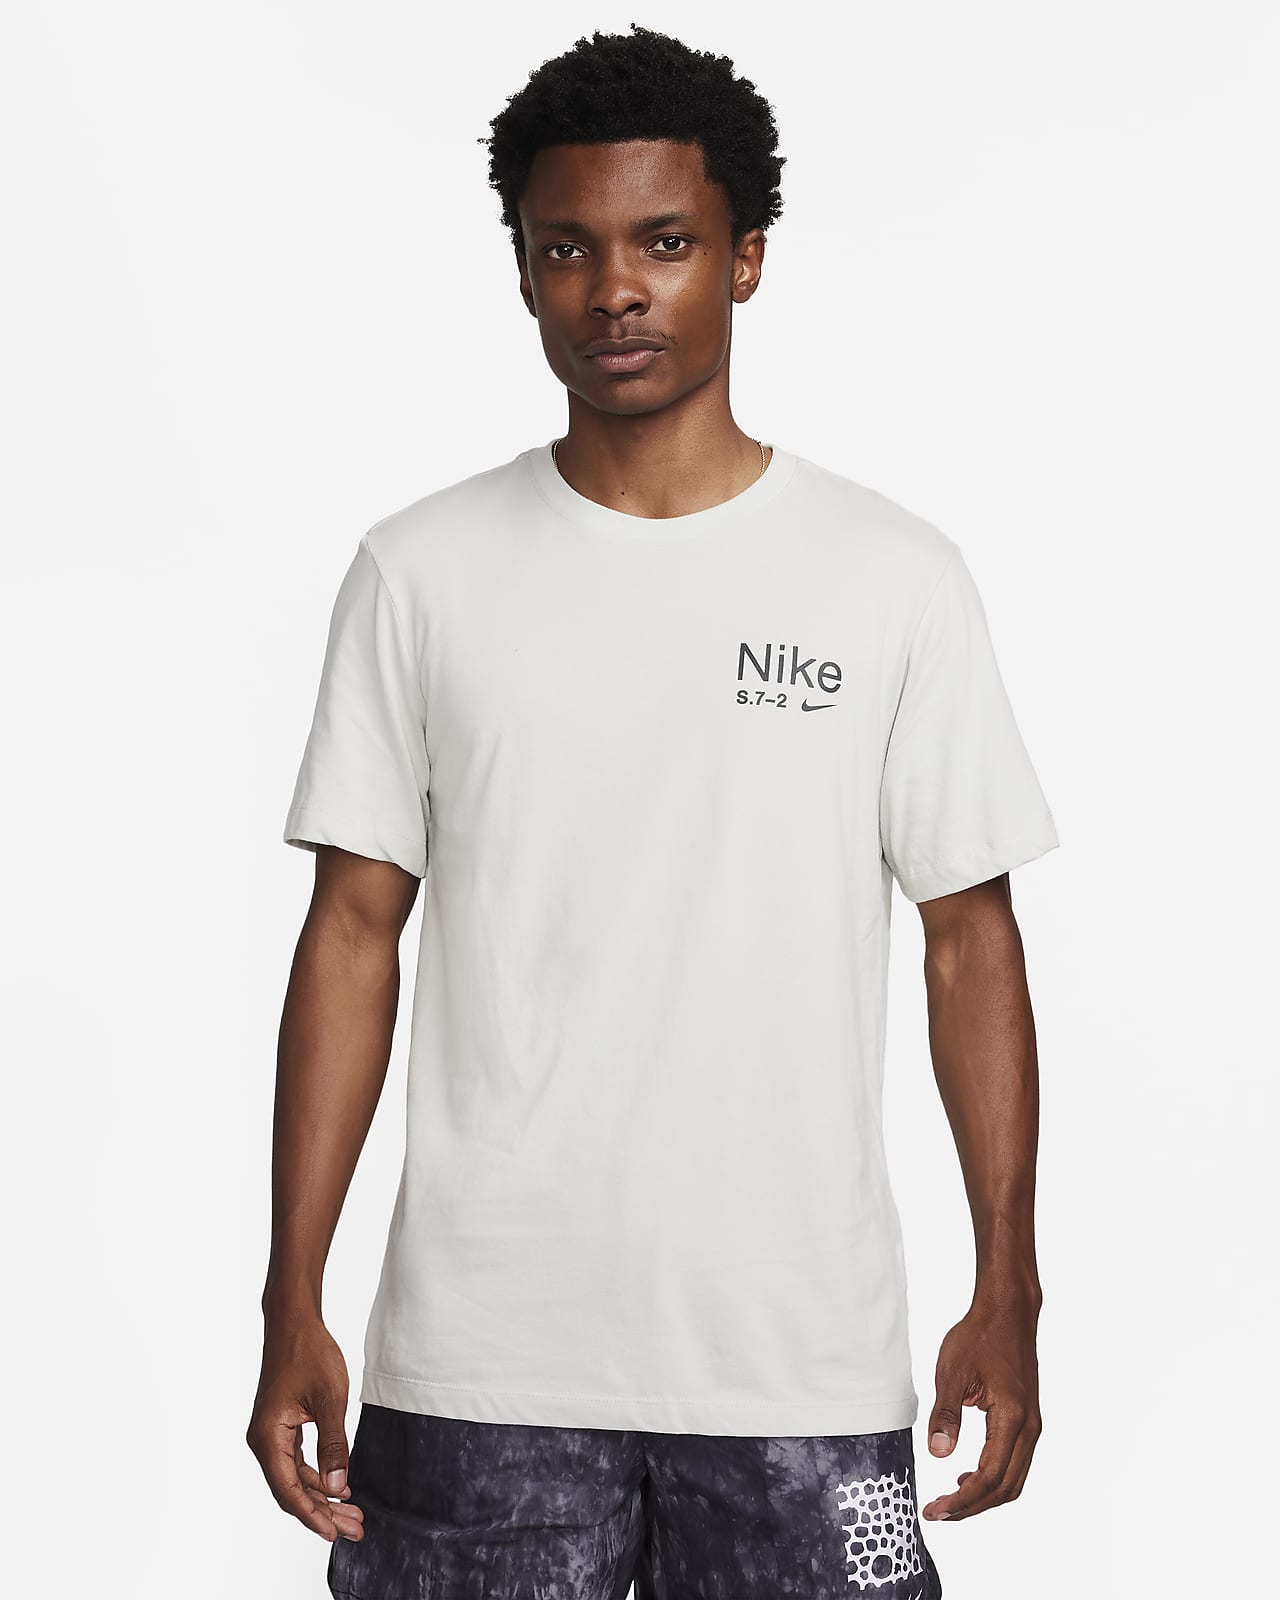 Nike Dri-FIT Men's T-Shirt. Nike.com